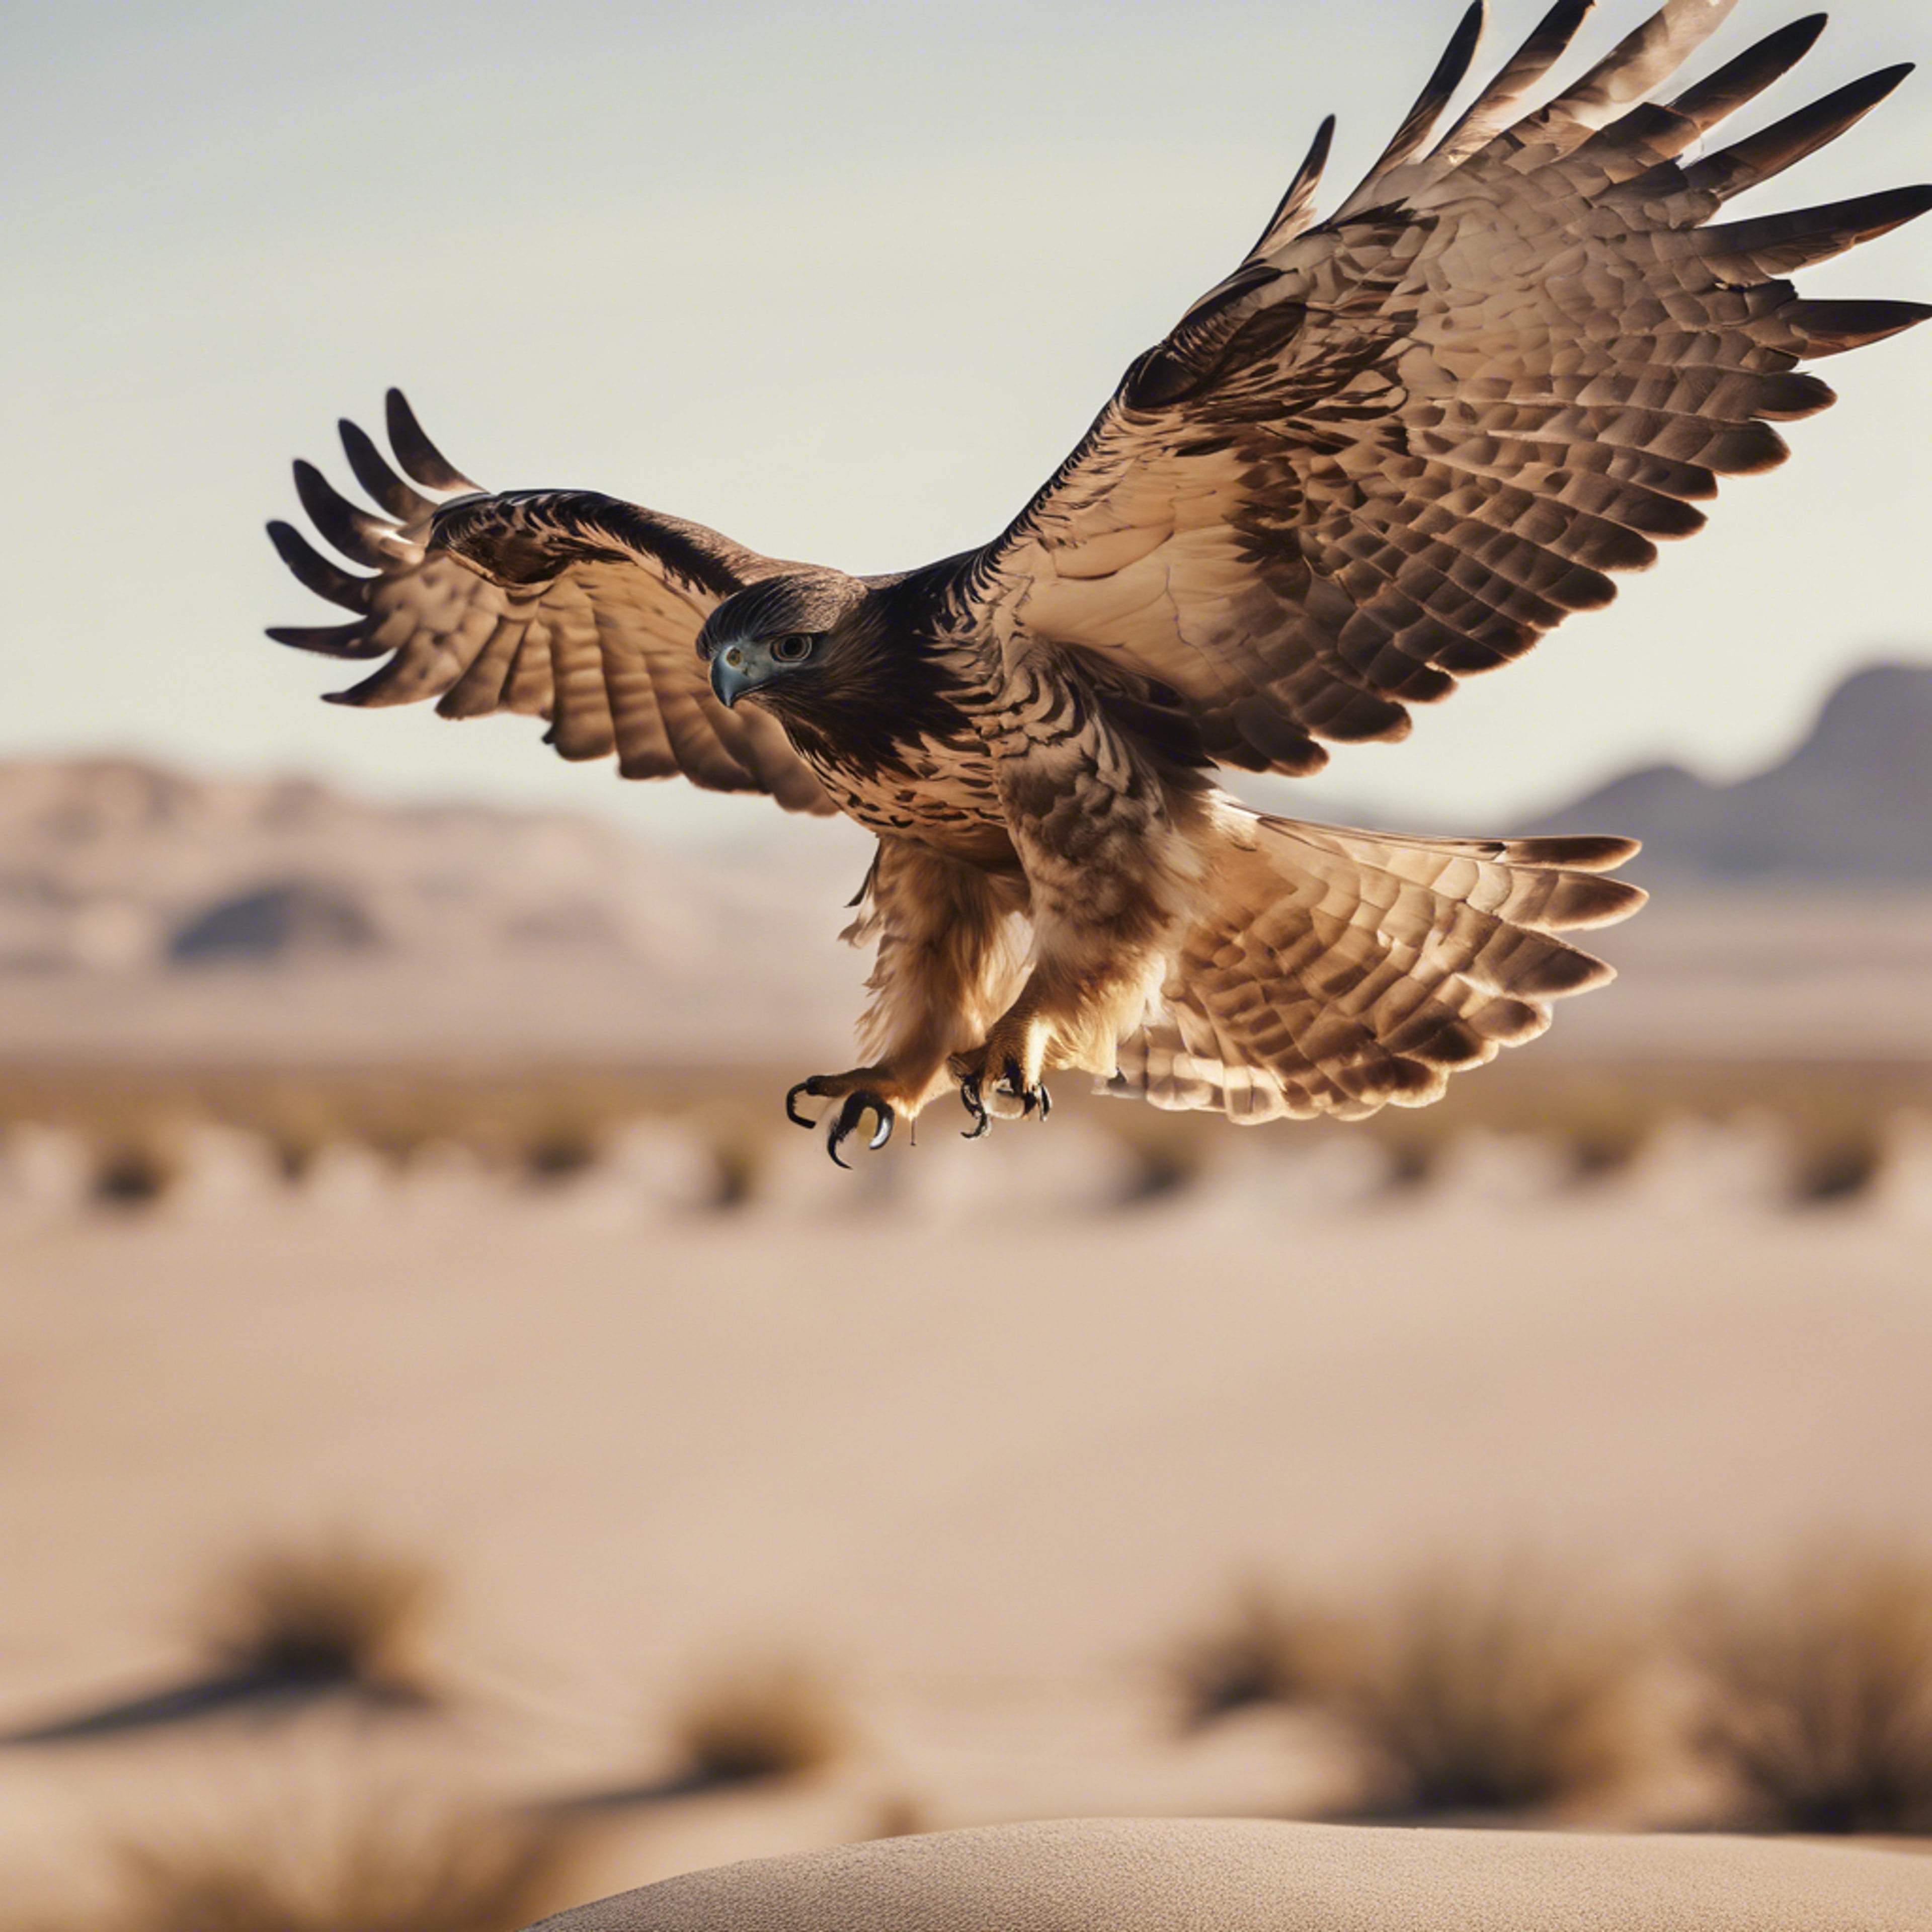 A hawk taking flight from its perch in a cool beige desert landscape. Behang[f9770860966b45f09558]